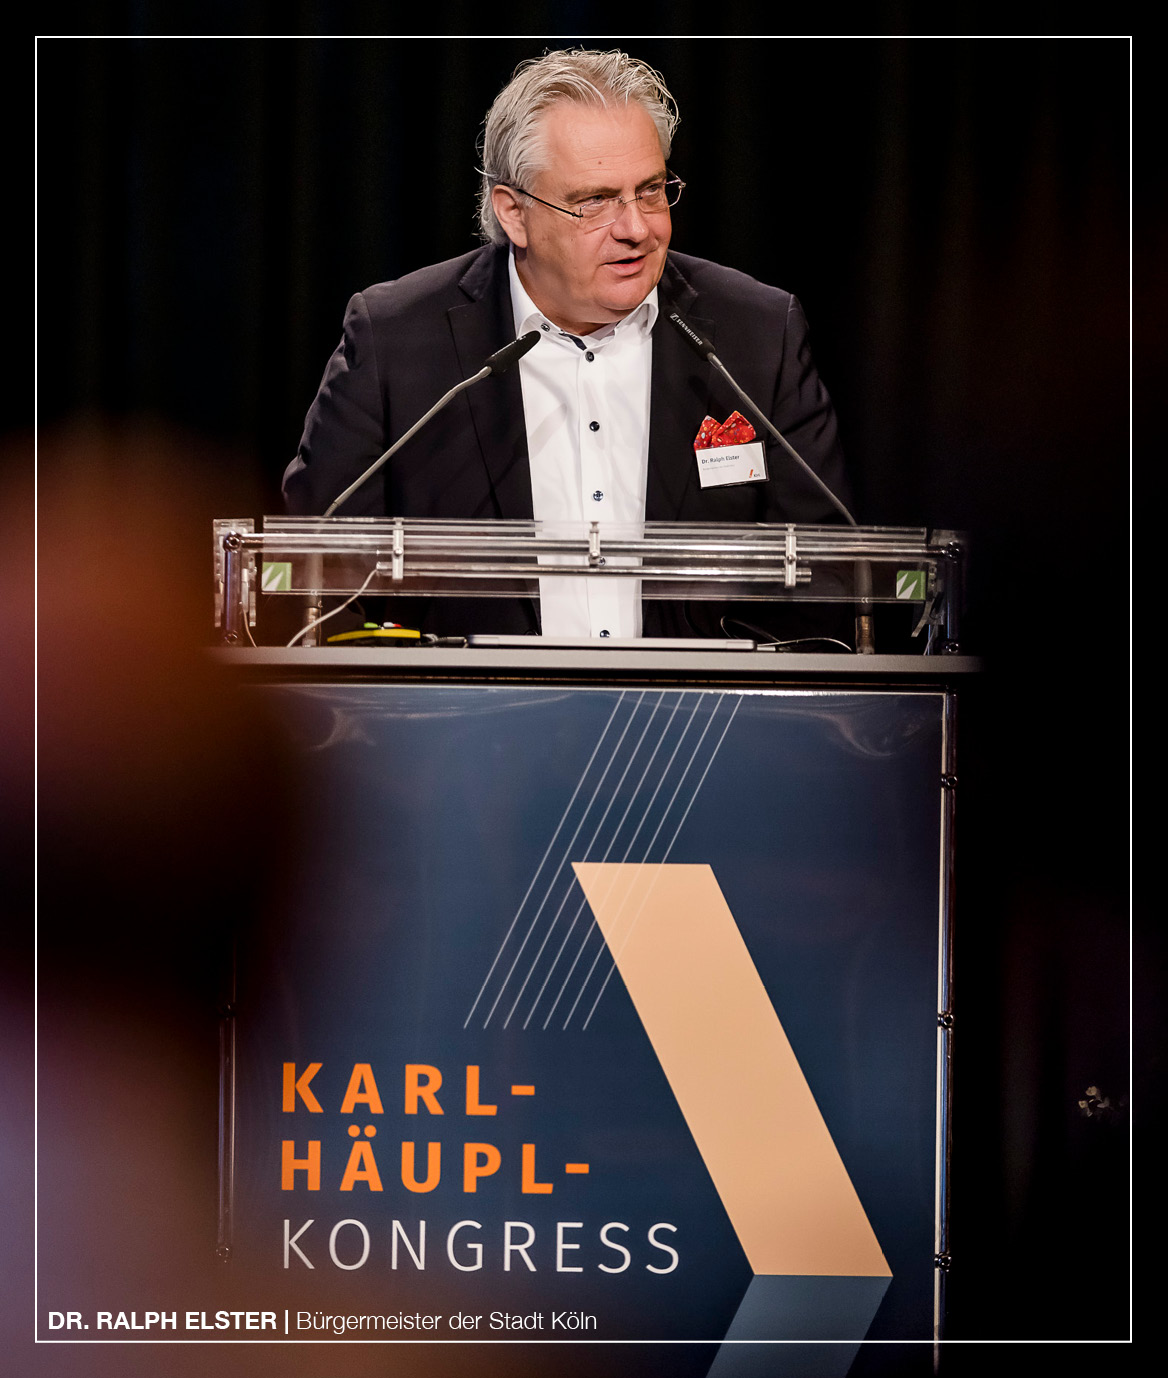 Karl-Häupl-Kongress: Zahnärzte trafen sich im Gürzenich für ein abwechslungsreiches Fortbildungsprogramm und einen kollegialen Austausch